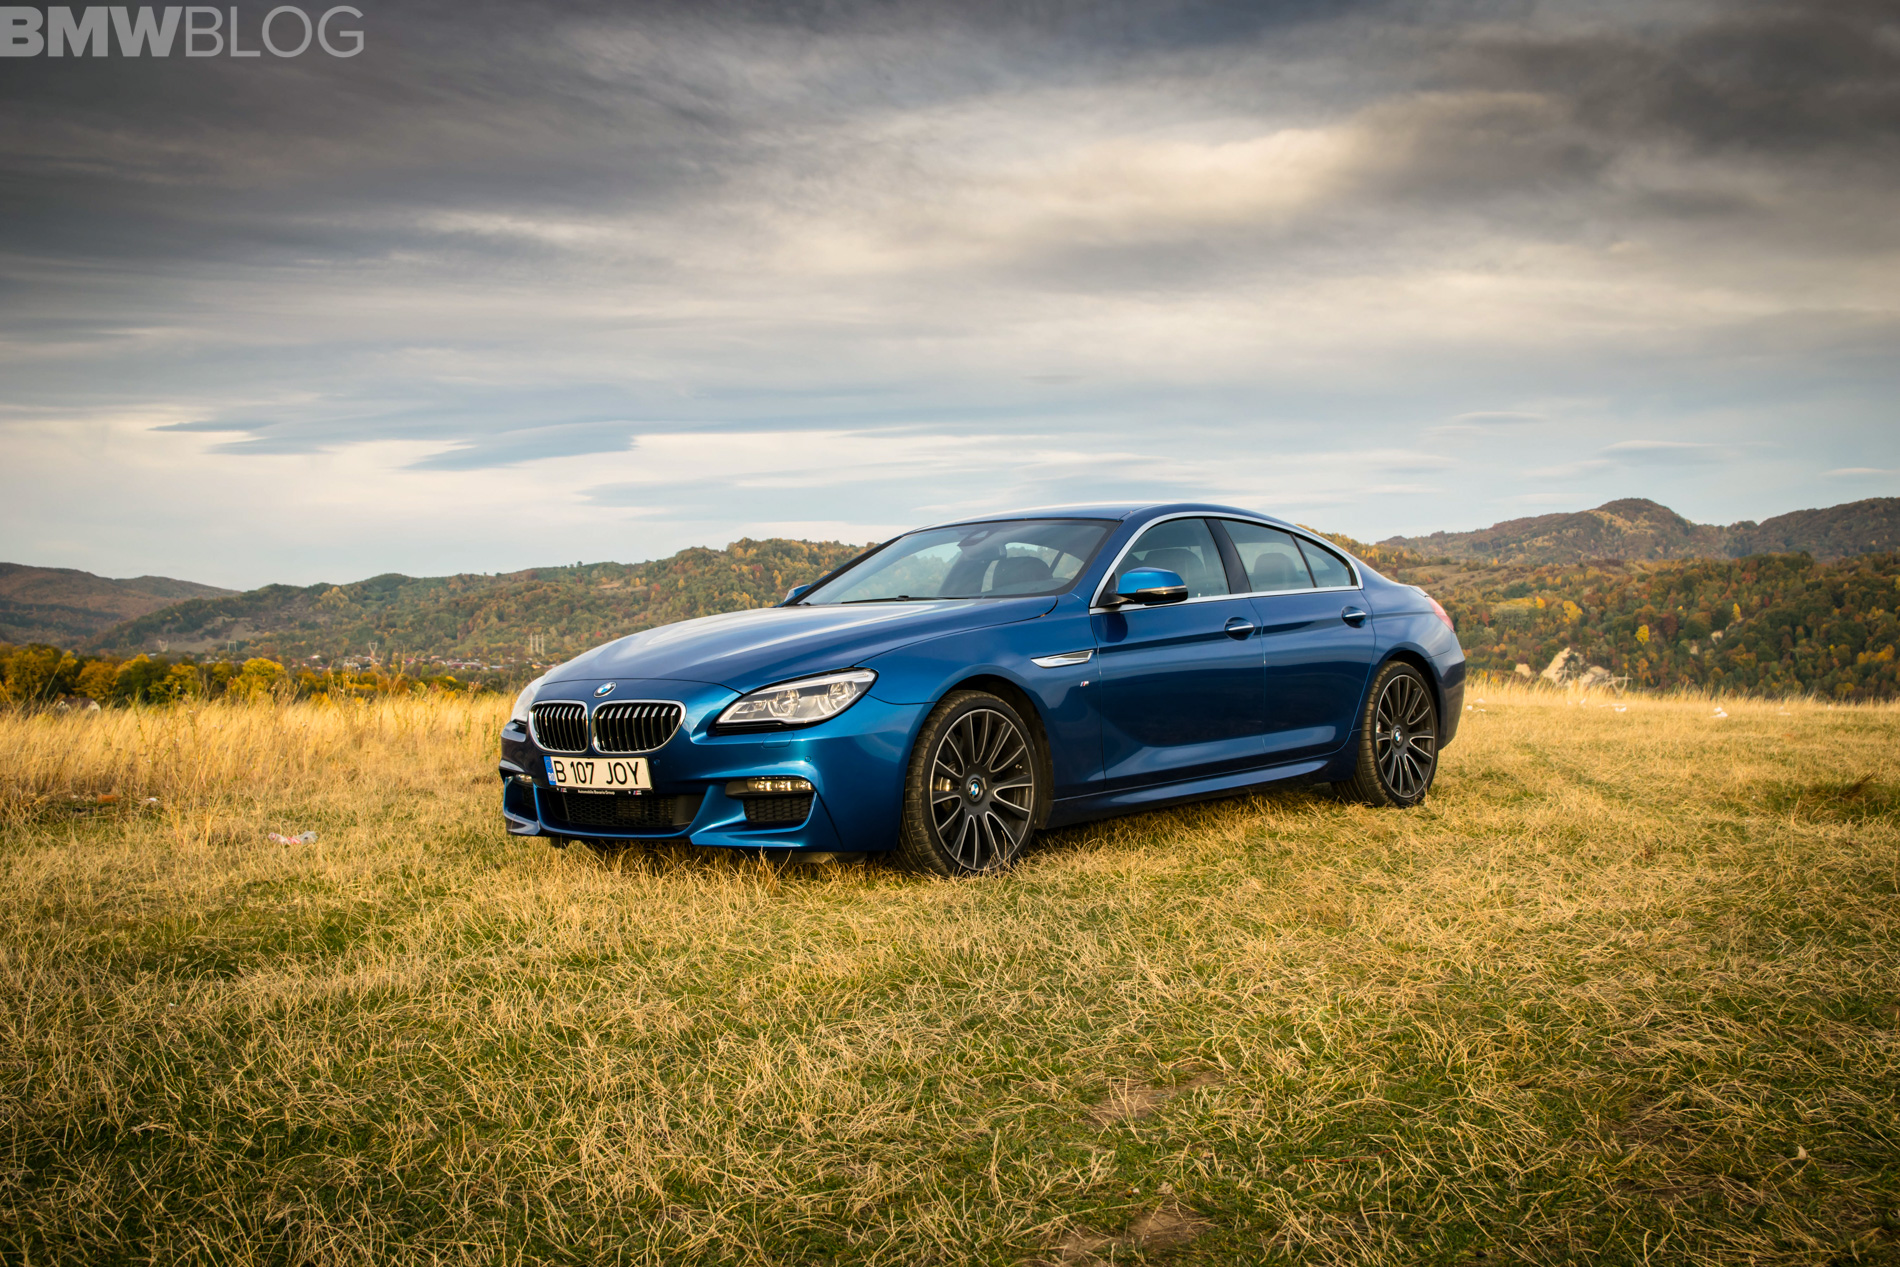 https://cdn.bmwblog.com/wp-content/uploads/2018/03/2018-BMW-640d-Gran-Coupe-review-14.jpg